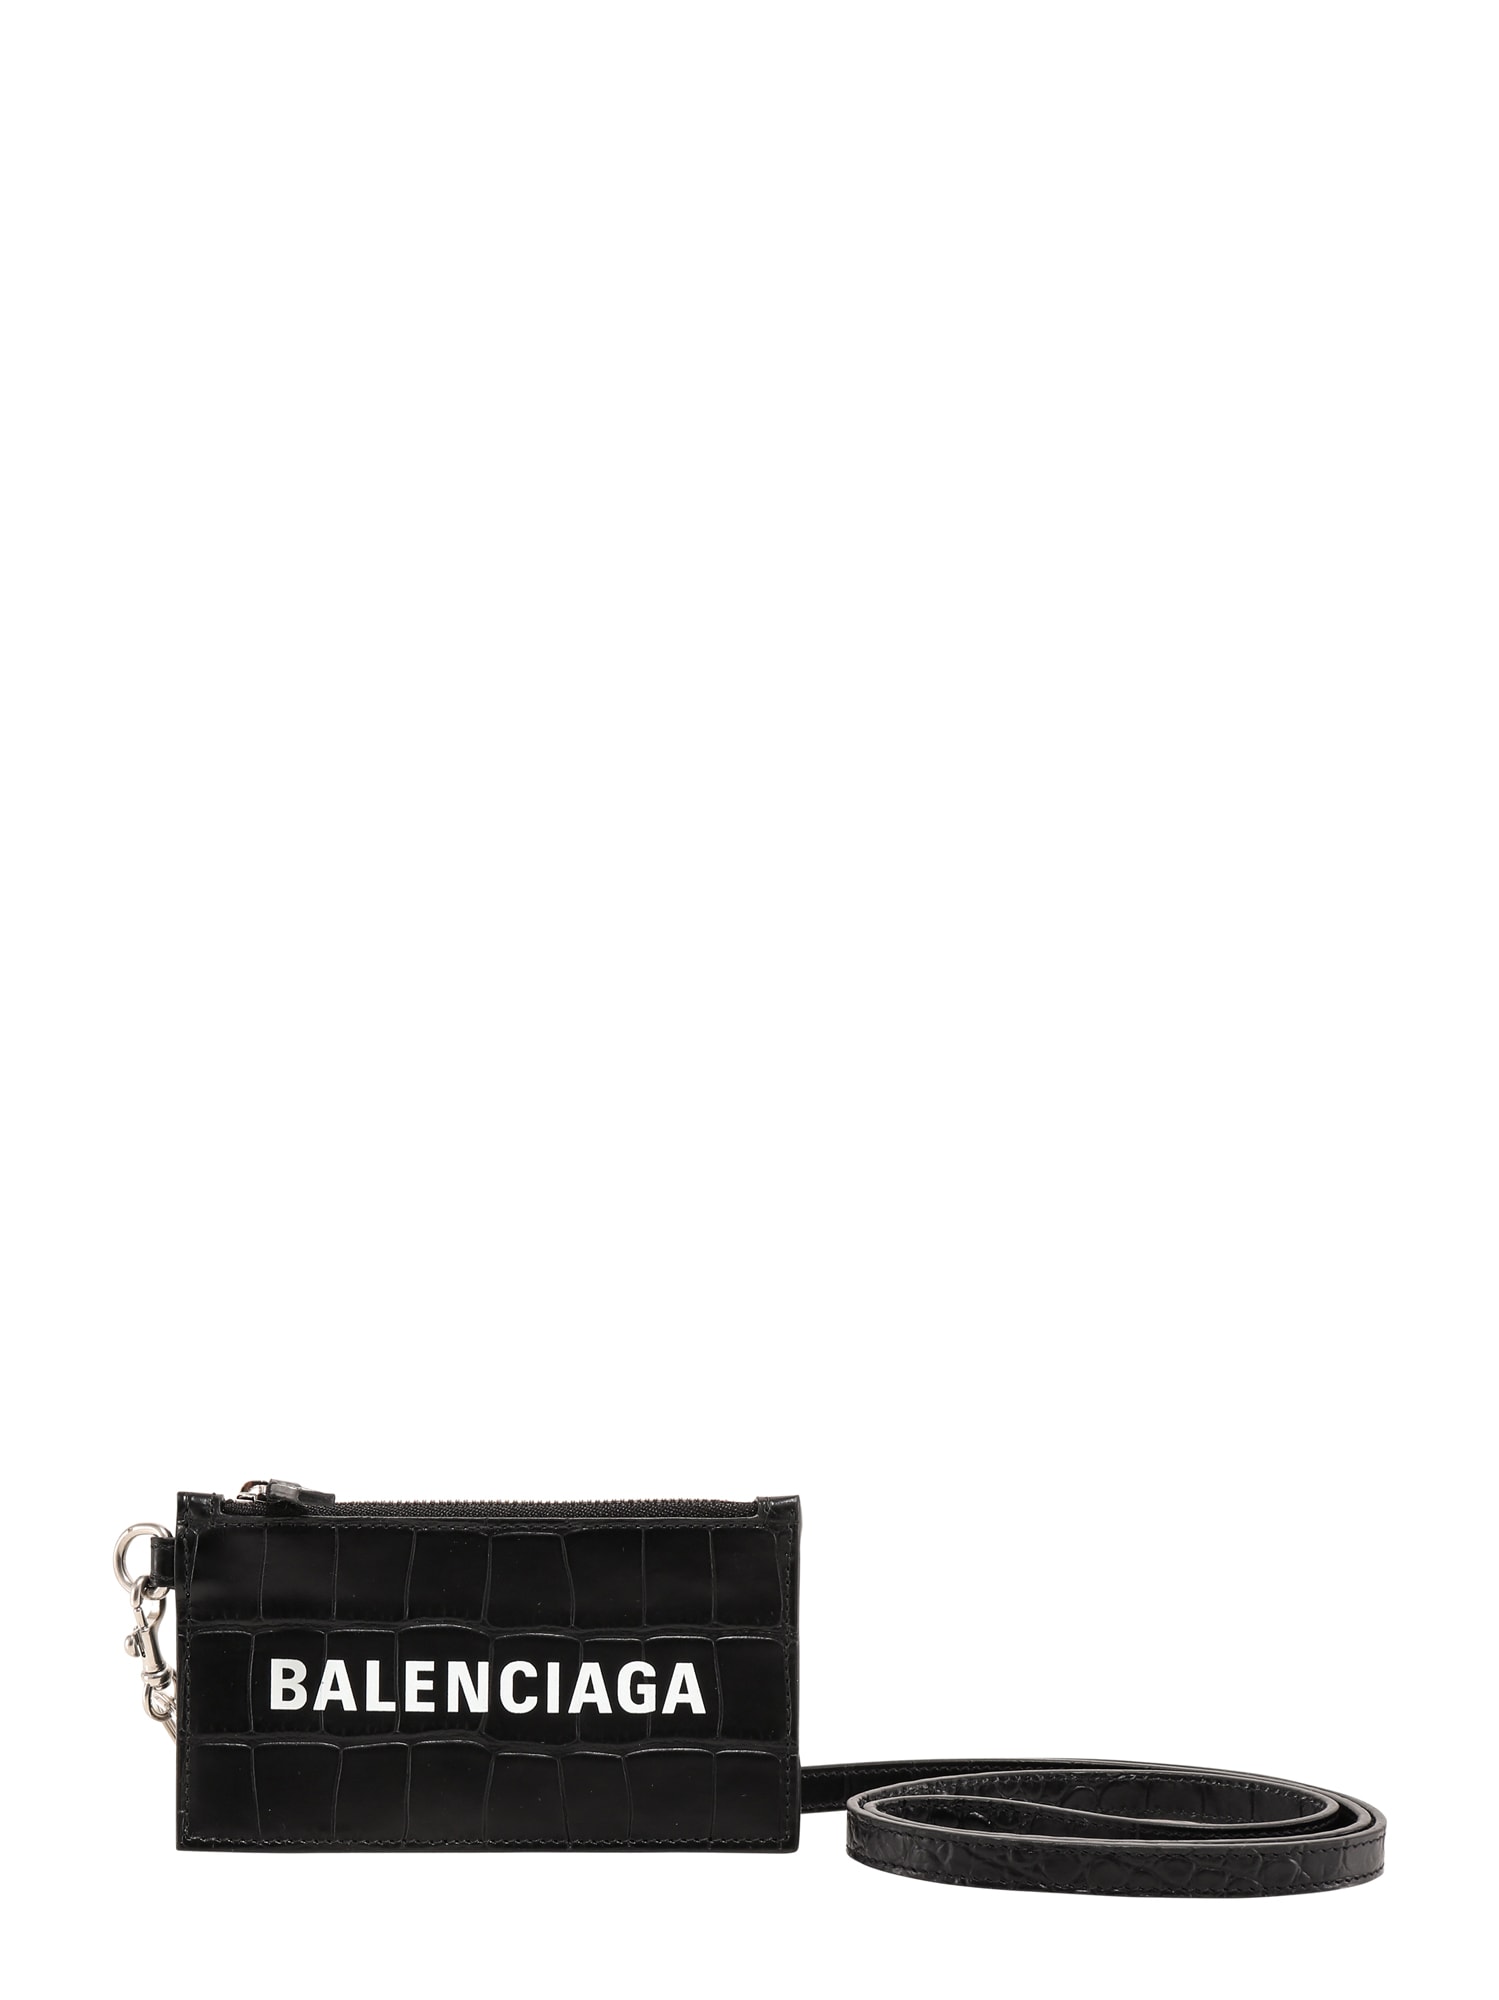 BALENCIAGA CARD HOLDER,5945481ROP3 1000